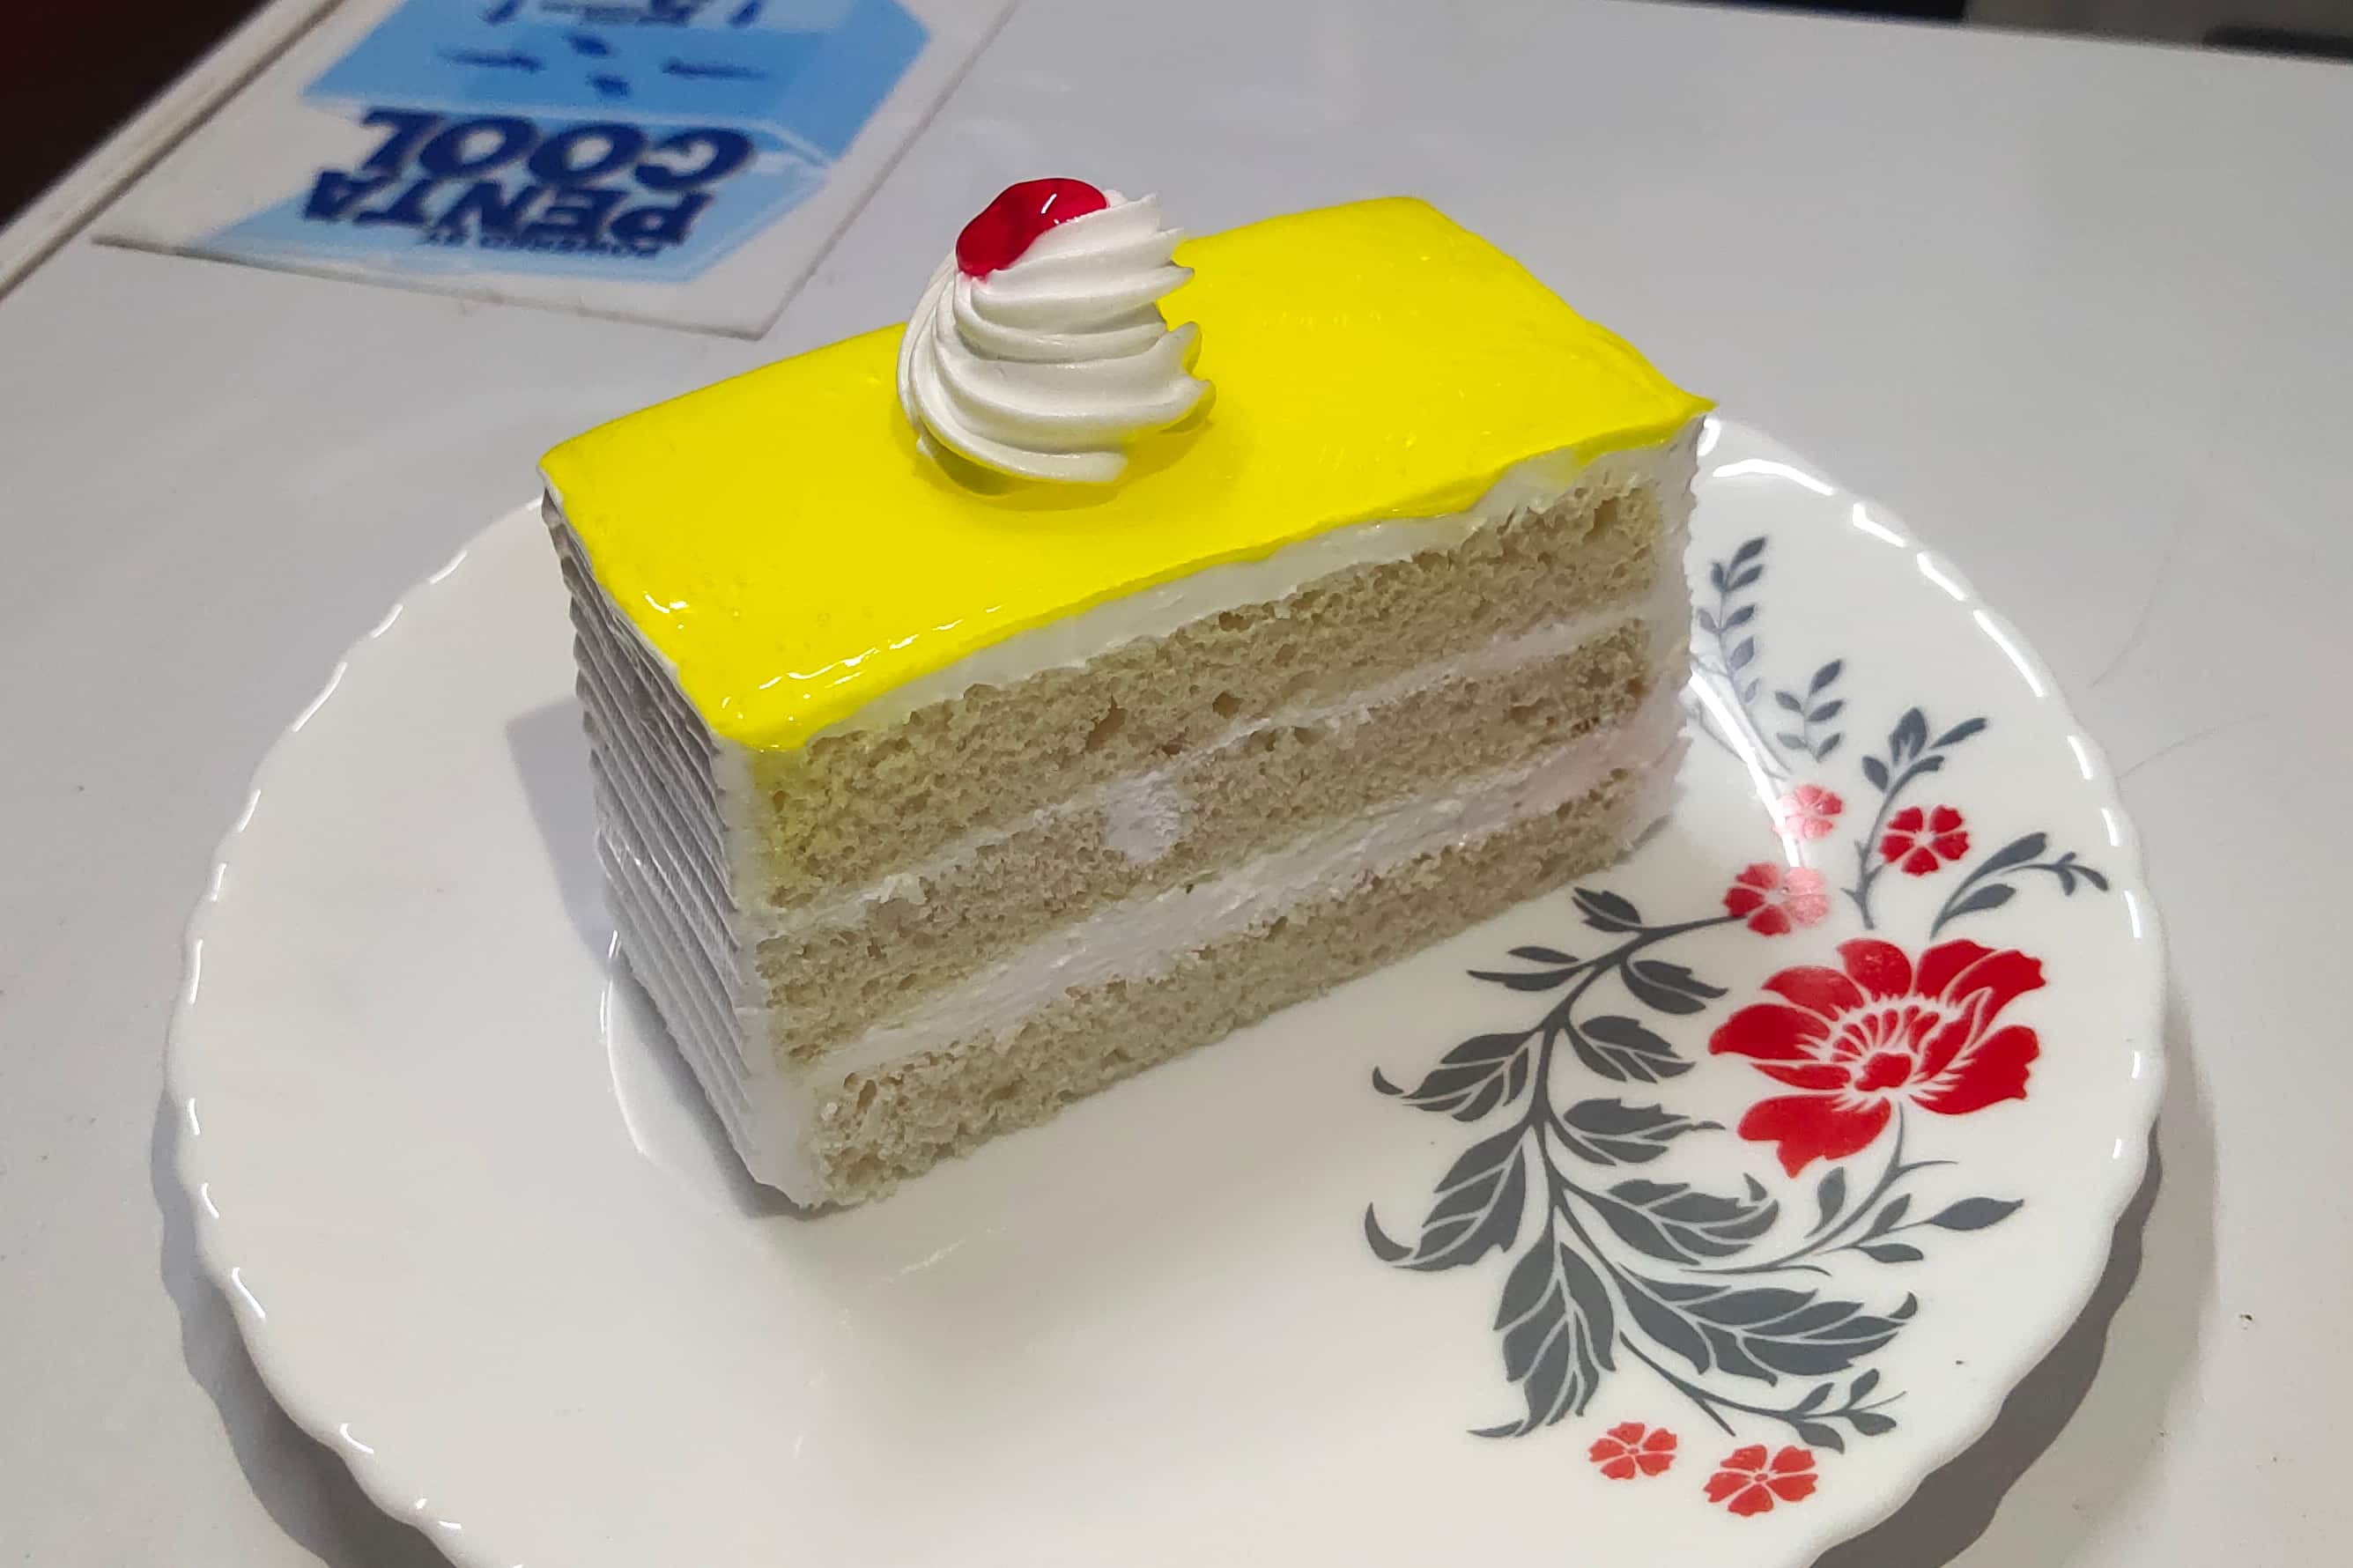 Cupcake Girl Cake | Novelty cakes, Themed cakes, Amazing cakes